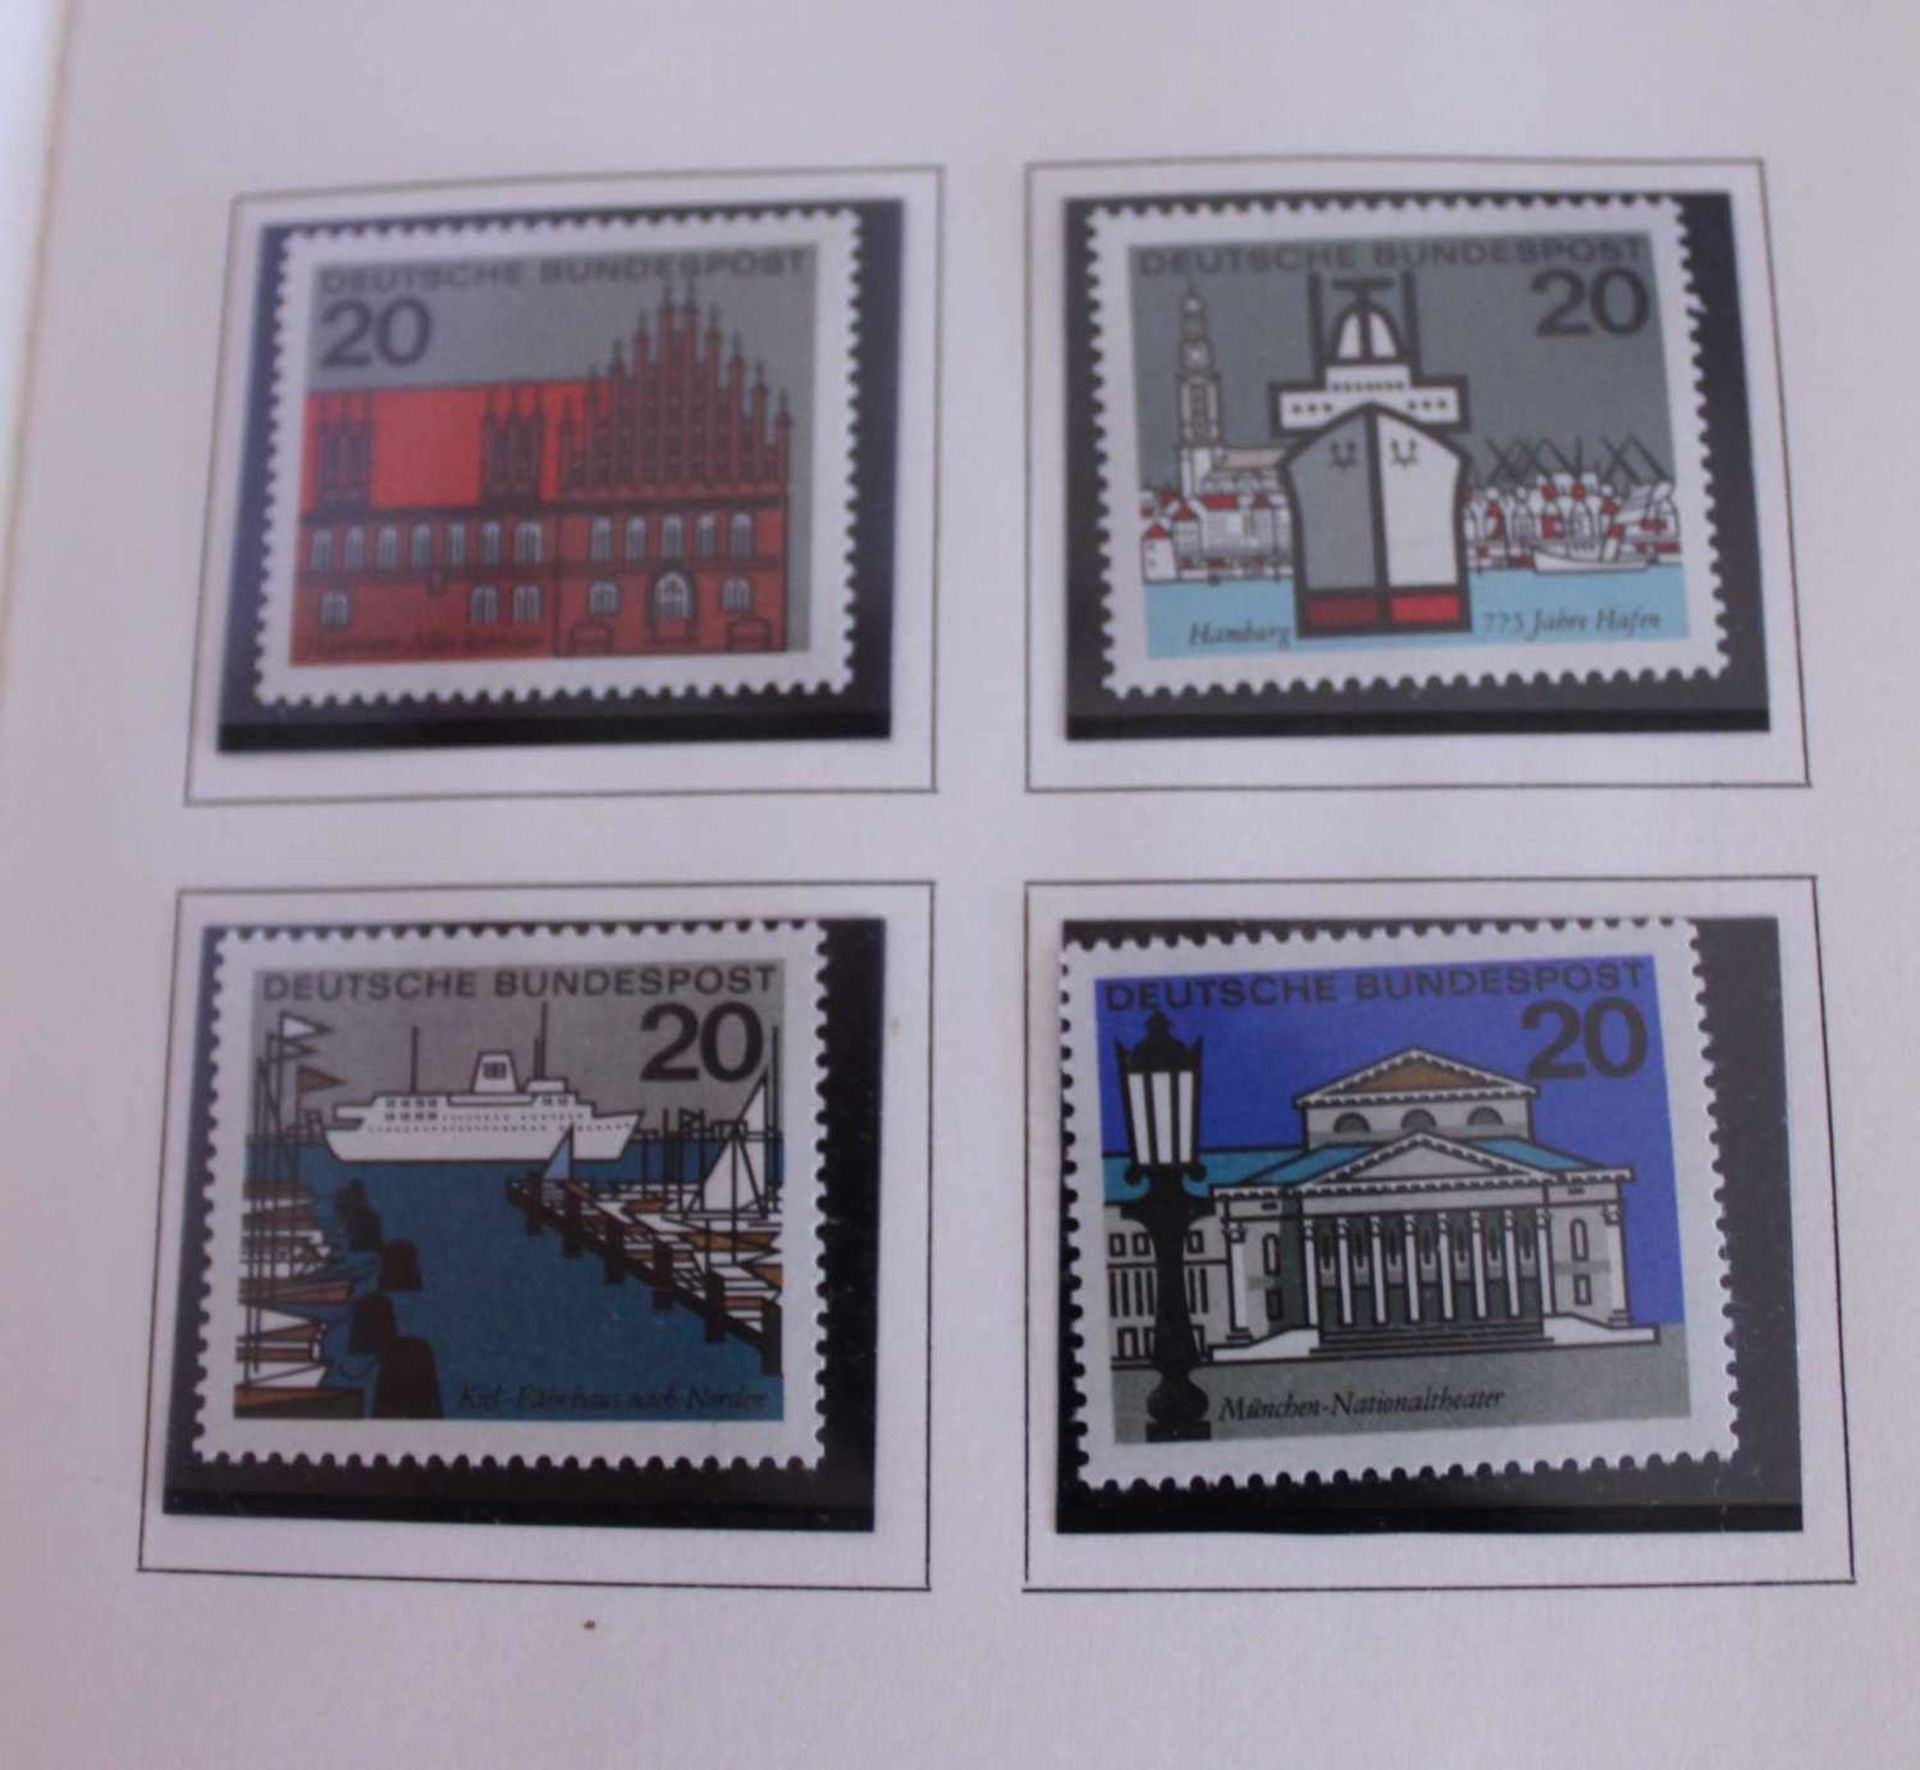 Deutsche Bundespost, special postage stamp promotion Postsparkasse 1964, special postage stamps 1962 - Bild 2 aus 3